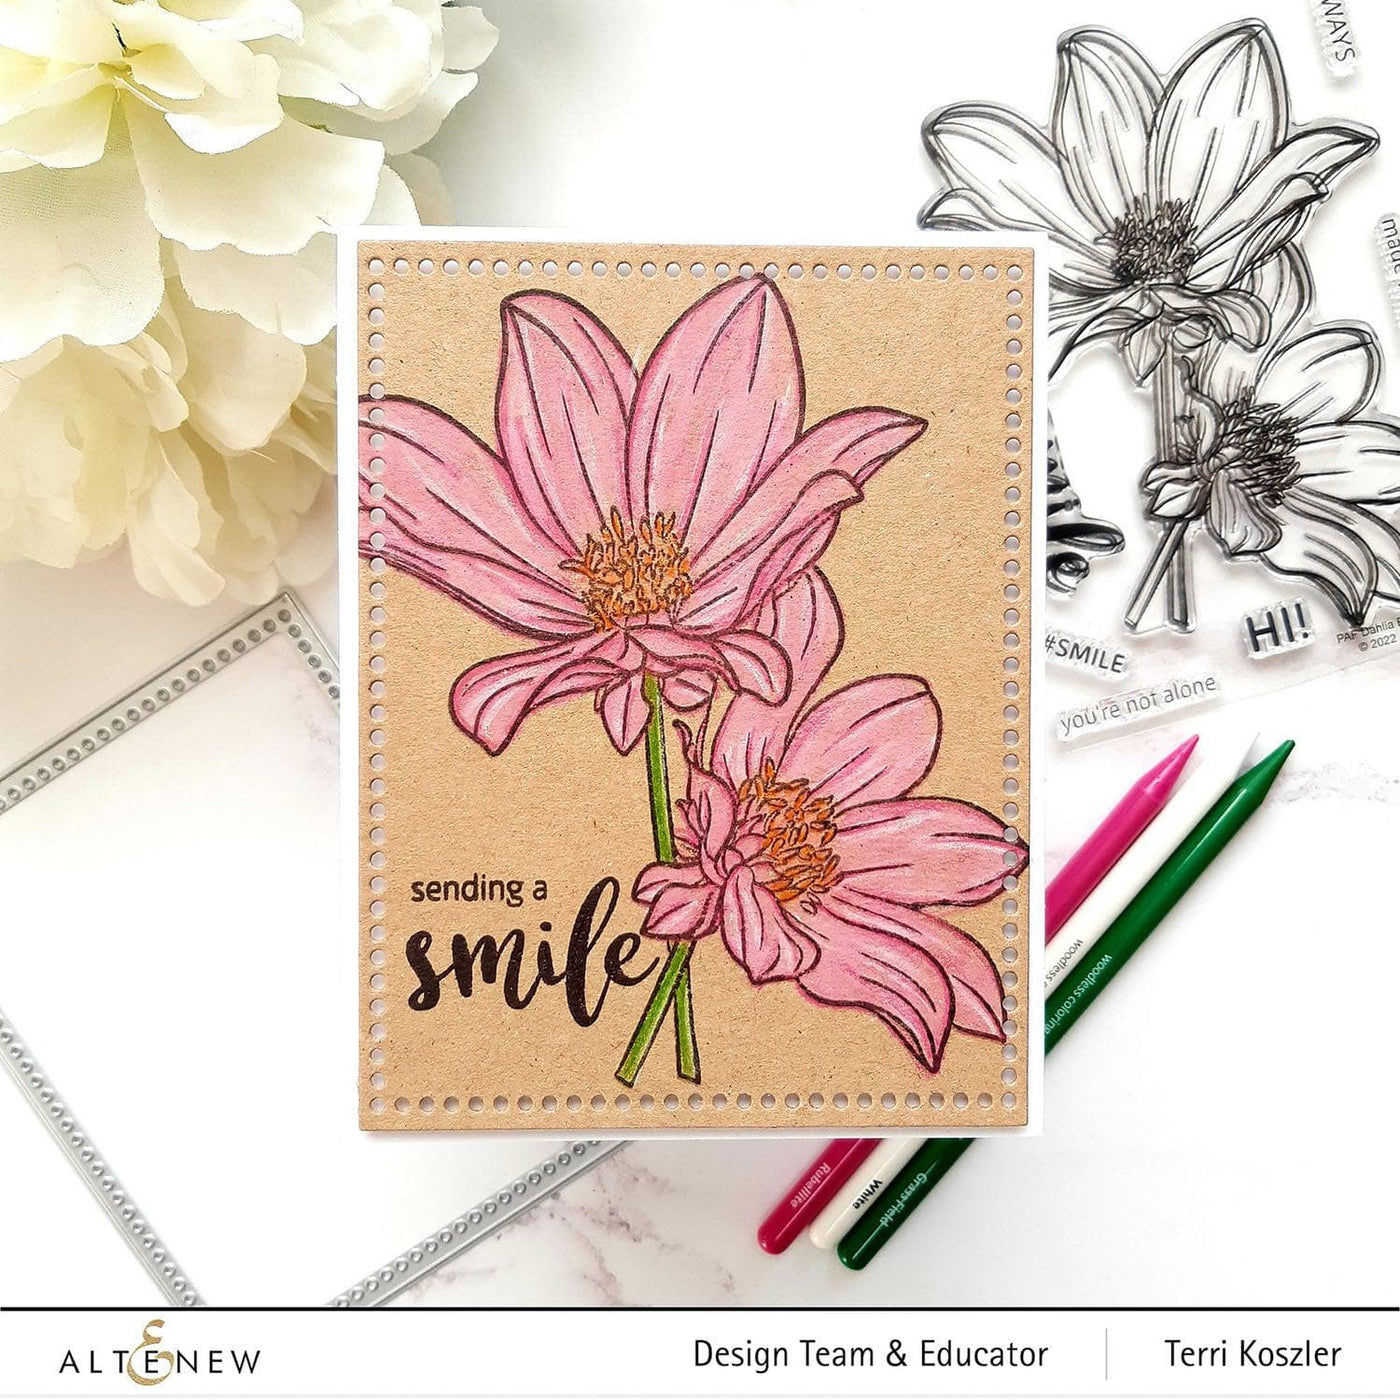 Altenew Stamp & Coloring Pencil Bundle Paint-A-Flower: Dahlia Bright Eyes & Woodless Coloring Pencils Bundle